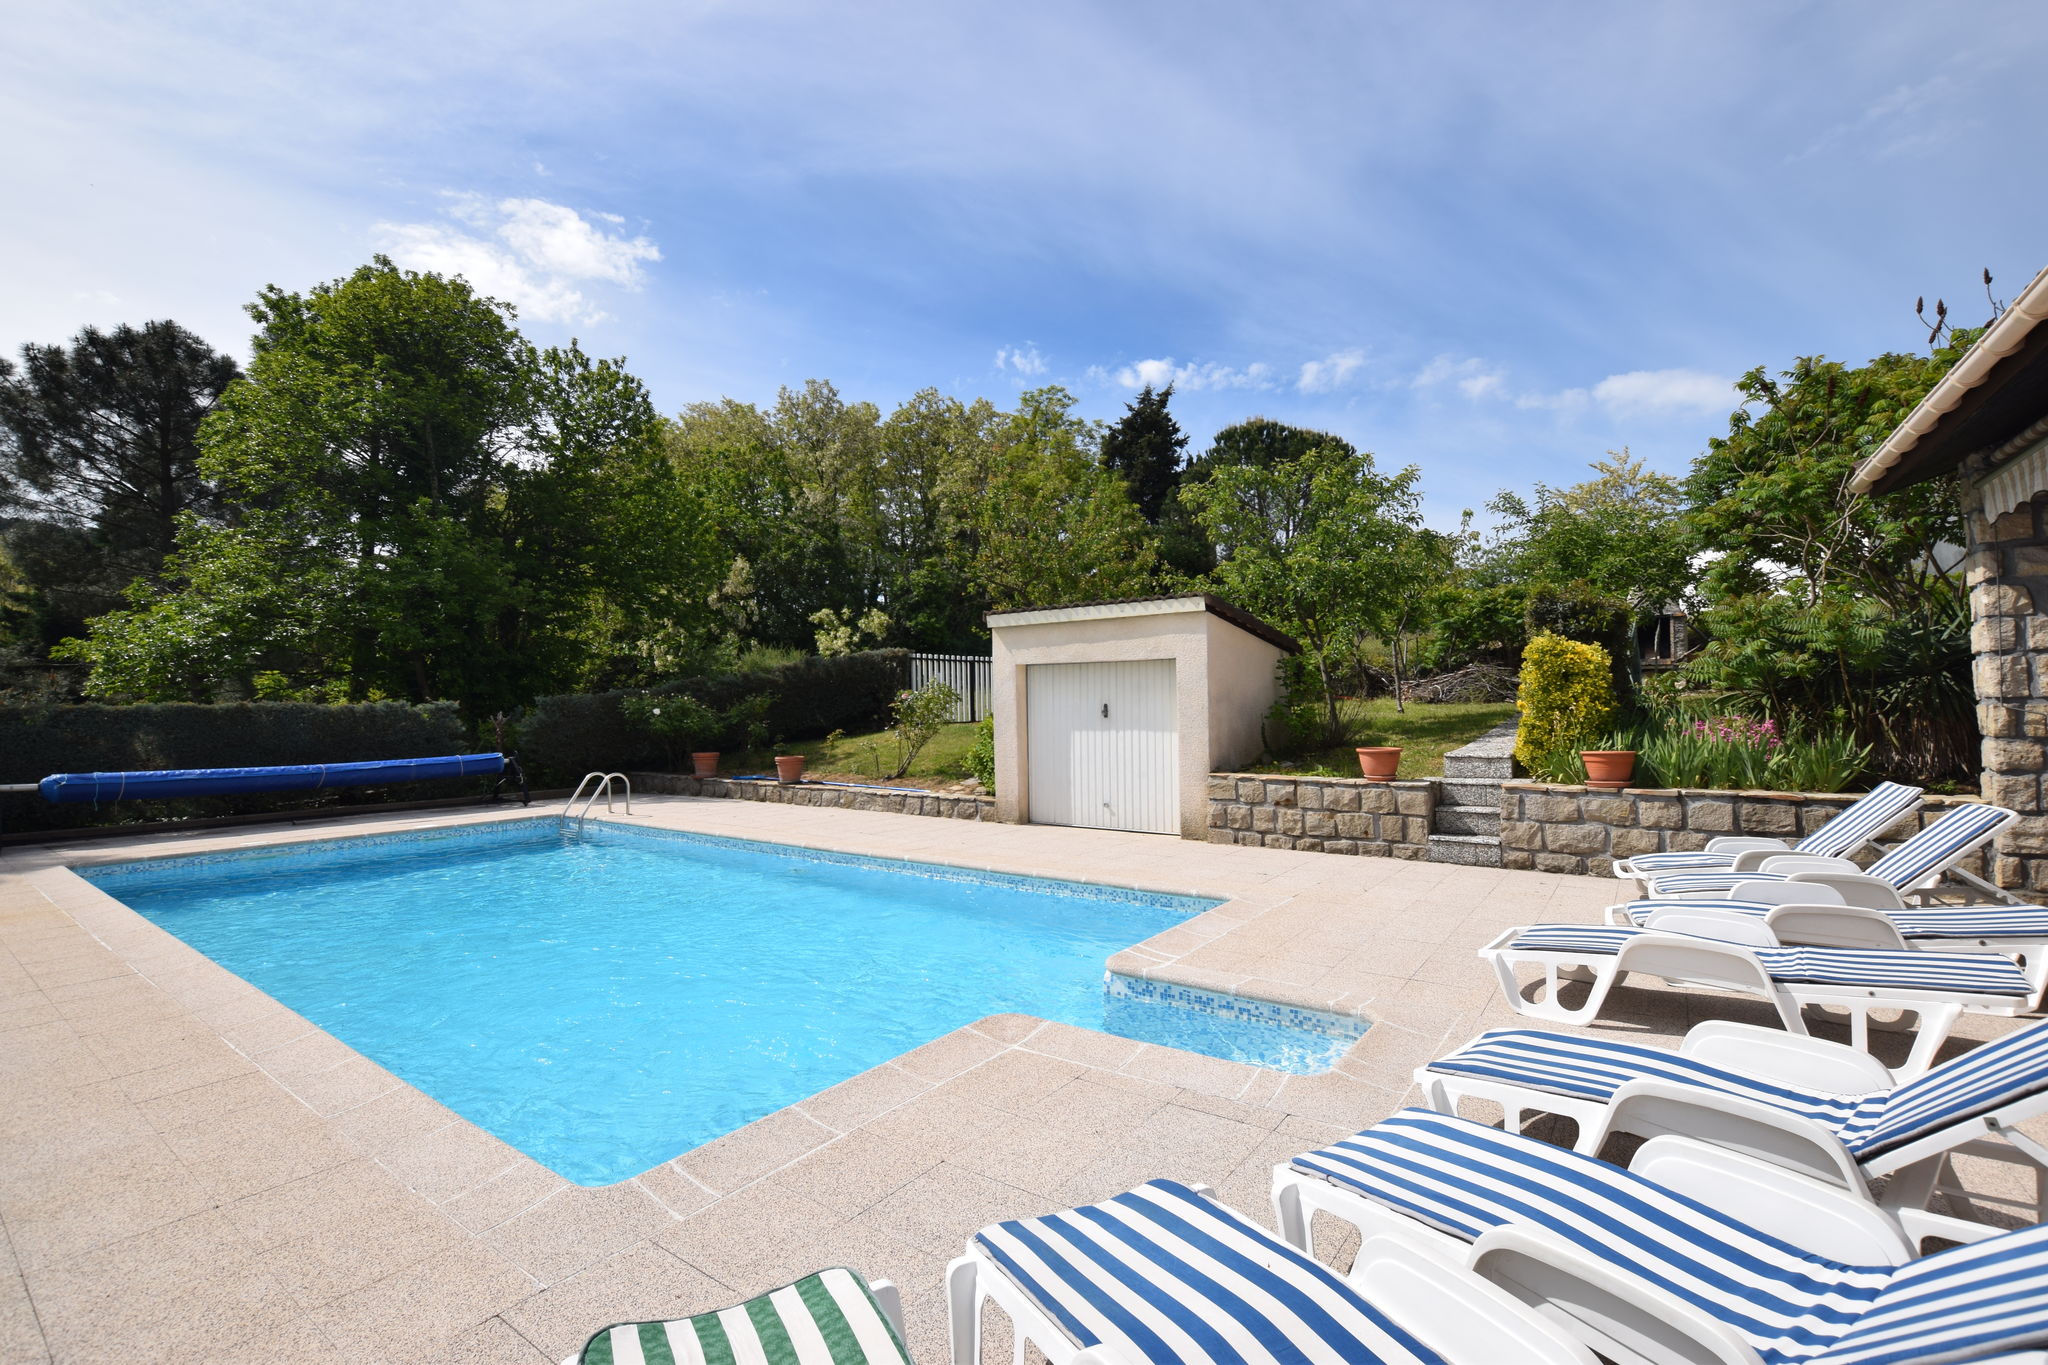 Detached villa in a small villa estate with private swimming pool